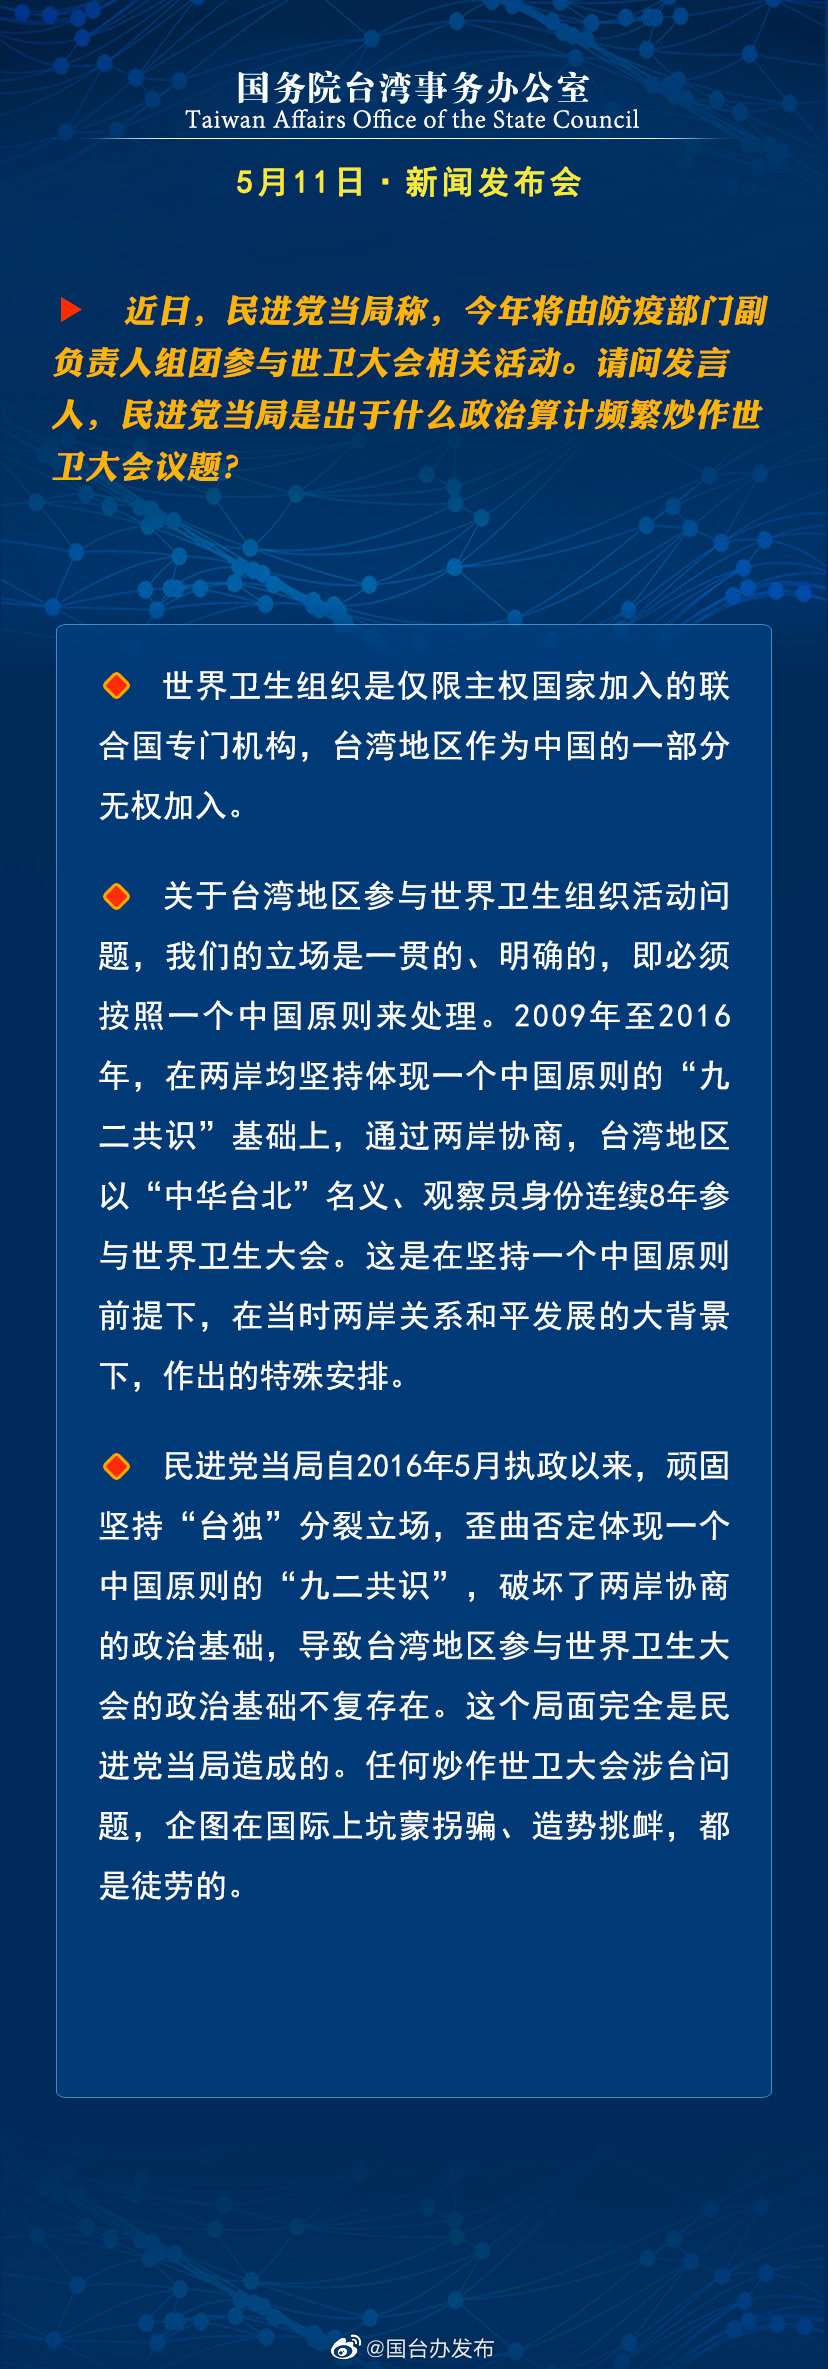 国务院台湾事务办公室5月11日·新闻发布会